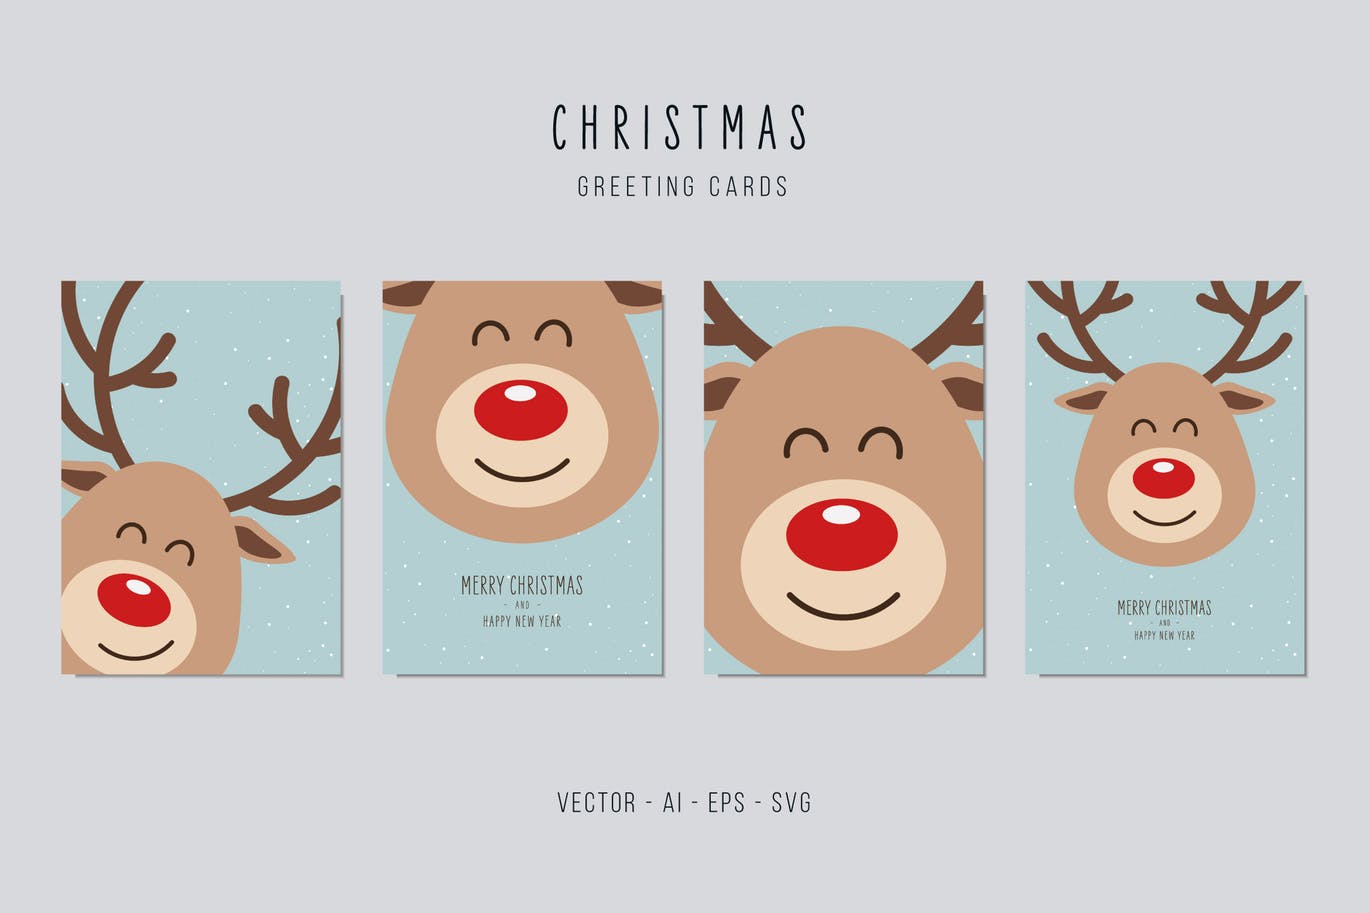 可爱卡通驯鹿图案圣诞节矢量贺卡设计模板v1 Reindeer Cute Vector Card Set插图